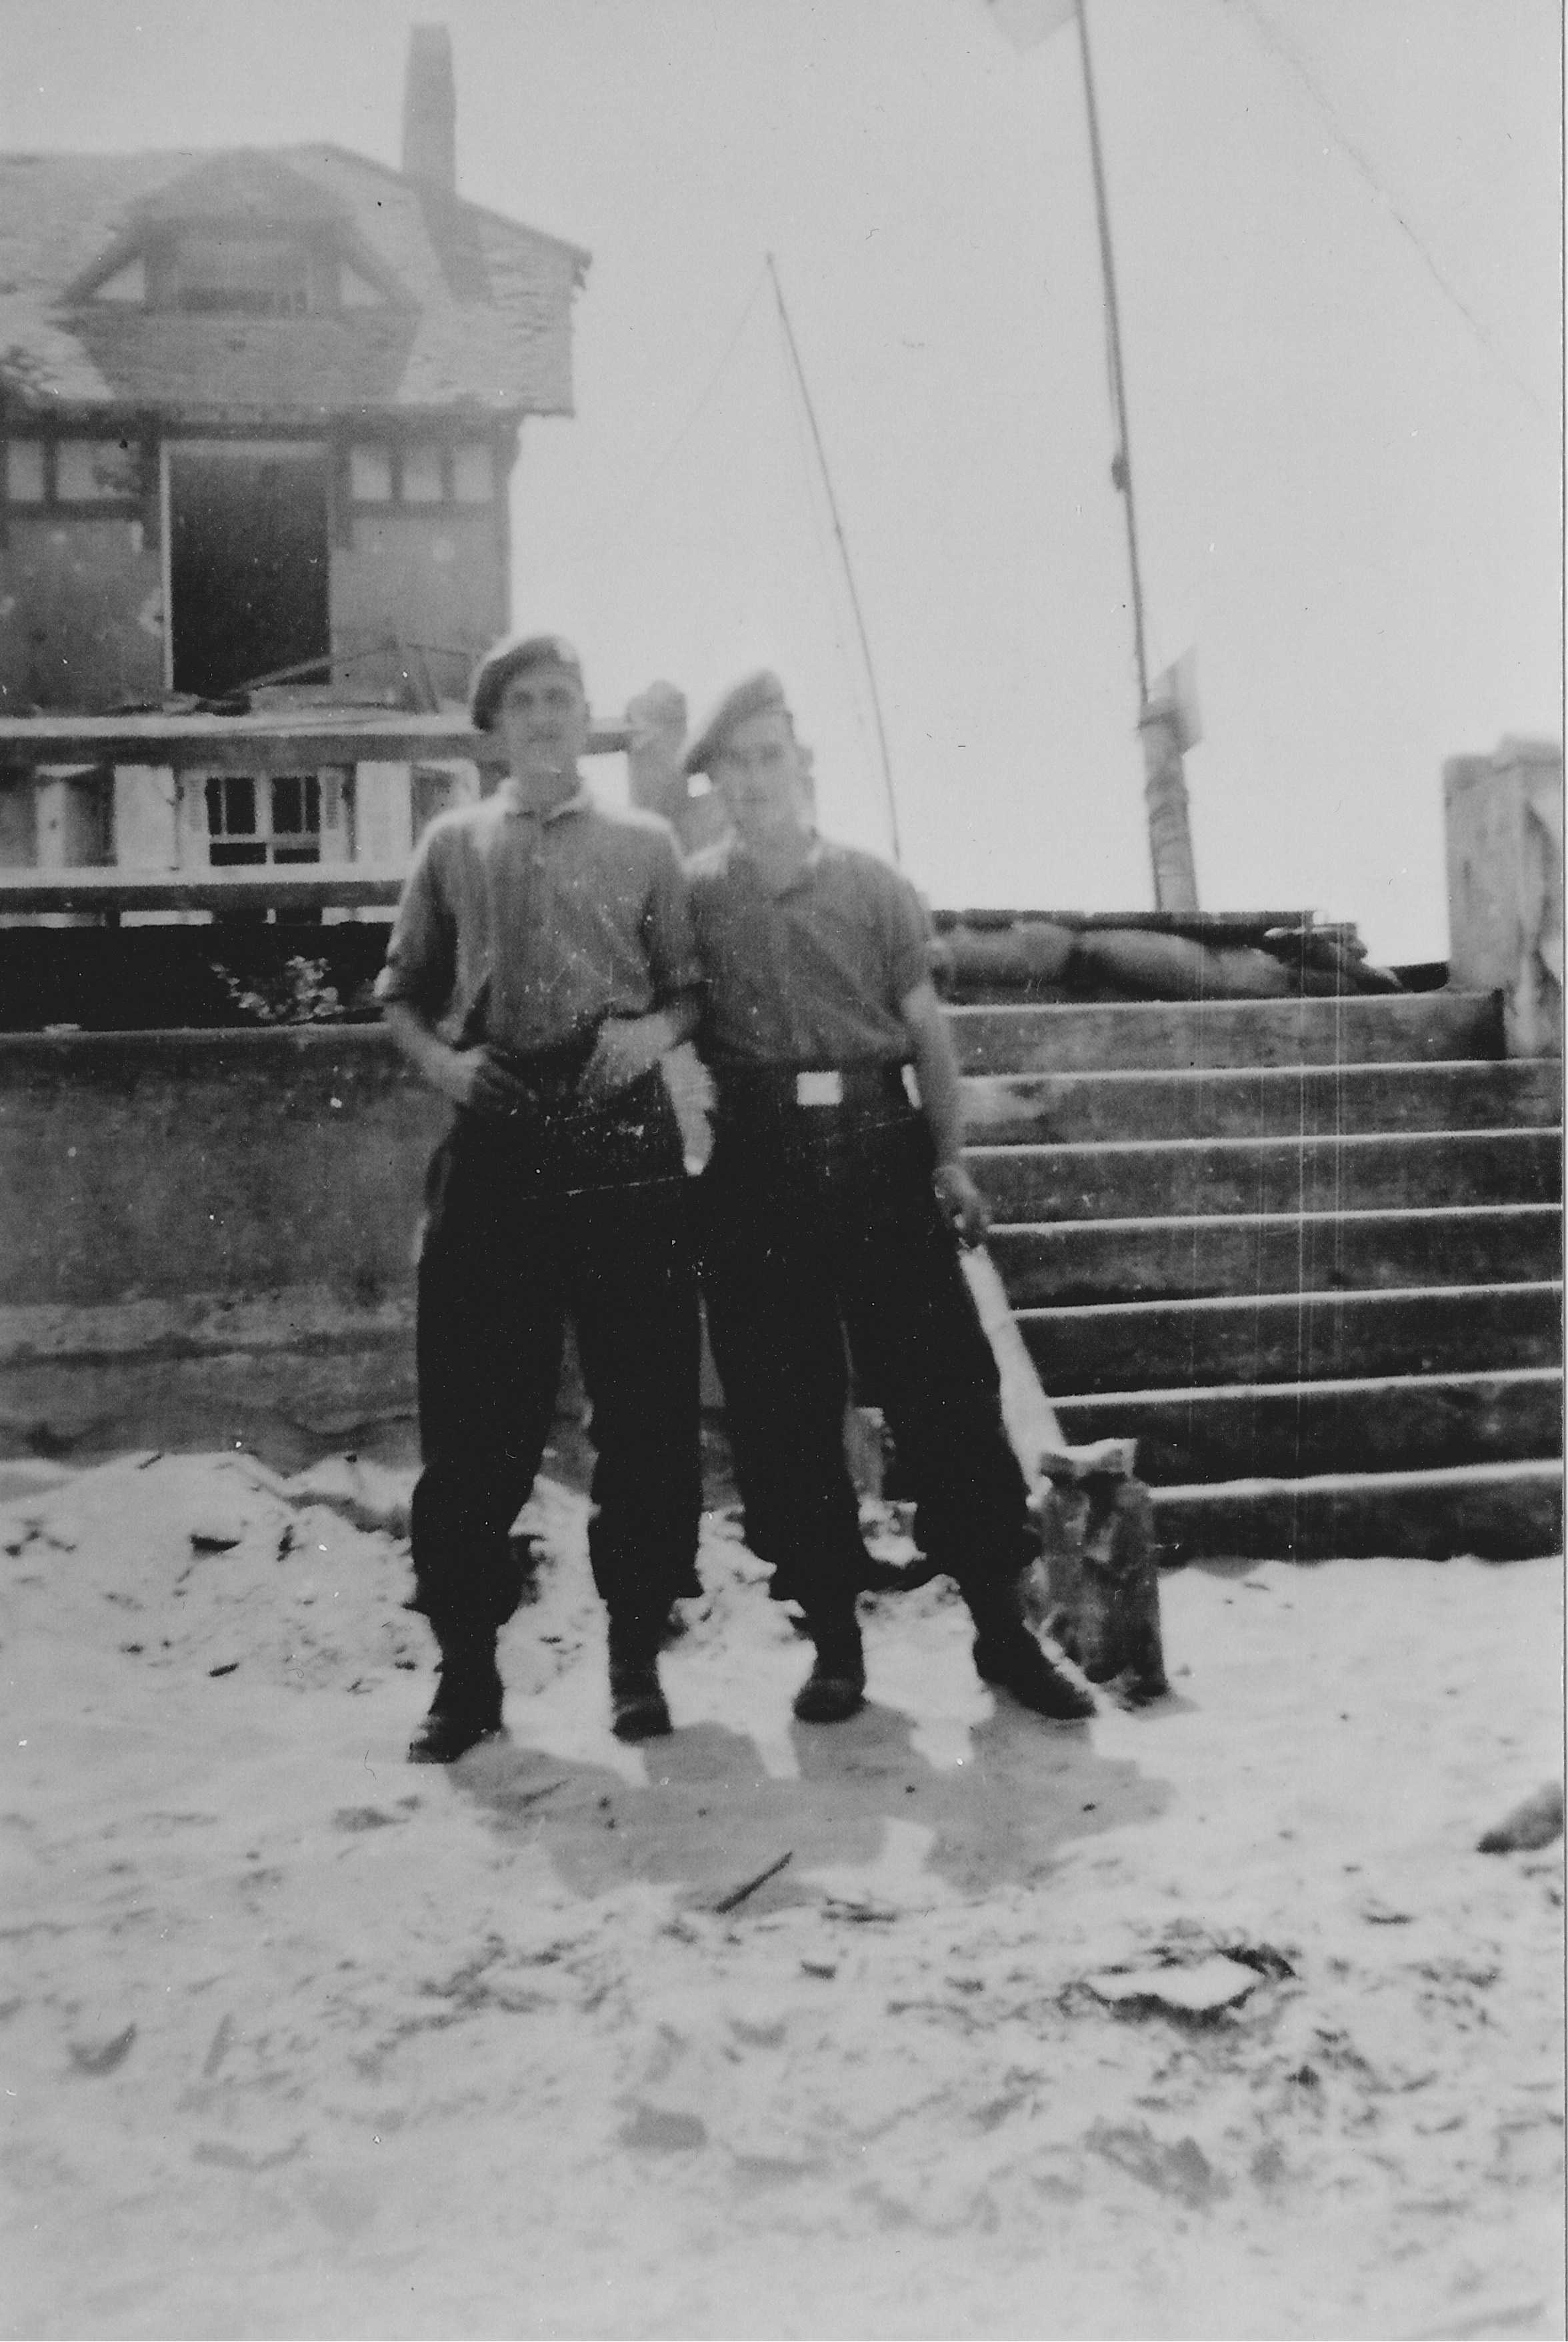 Photographie en noir et blanc – Deux soldats canadiens debout devant la digue; un escalier en pierre est à leur gauche. Une maison est visible à l’arrière-plan; l’une des fenêtres a explosé. Ils posent debout, sur une plage sablonneuse.